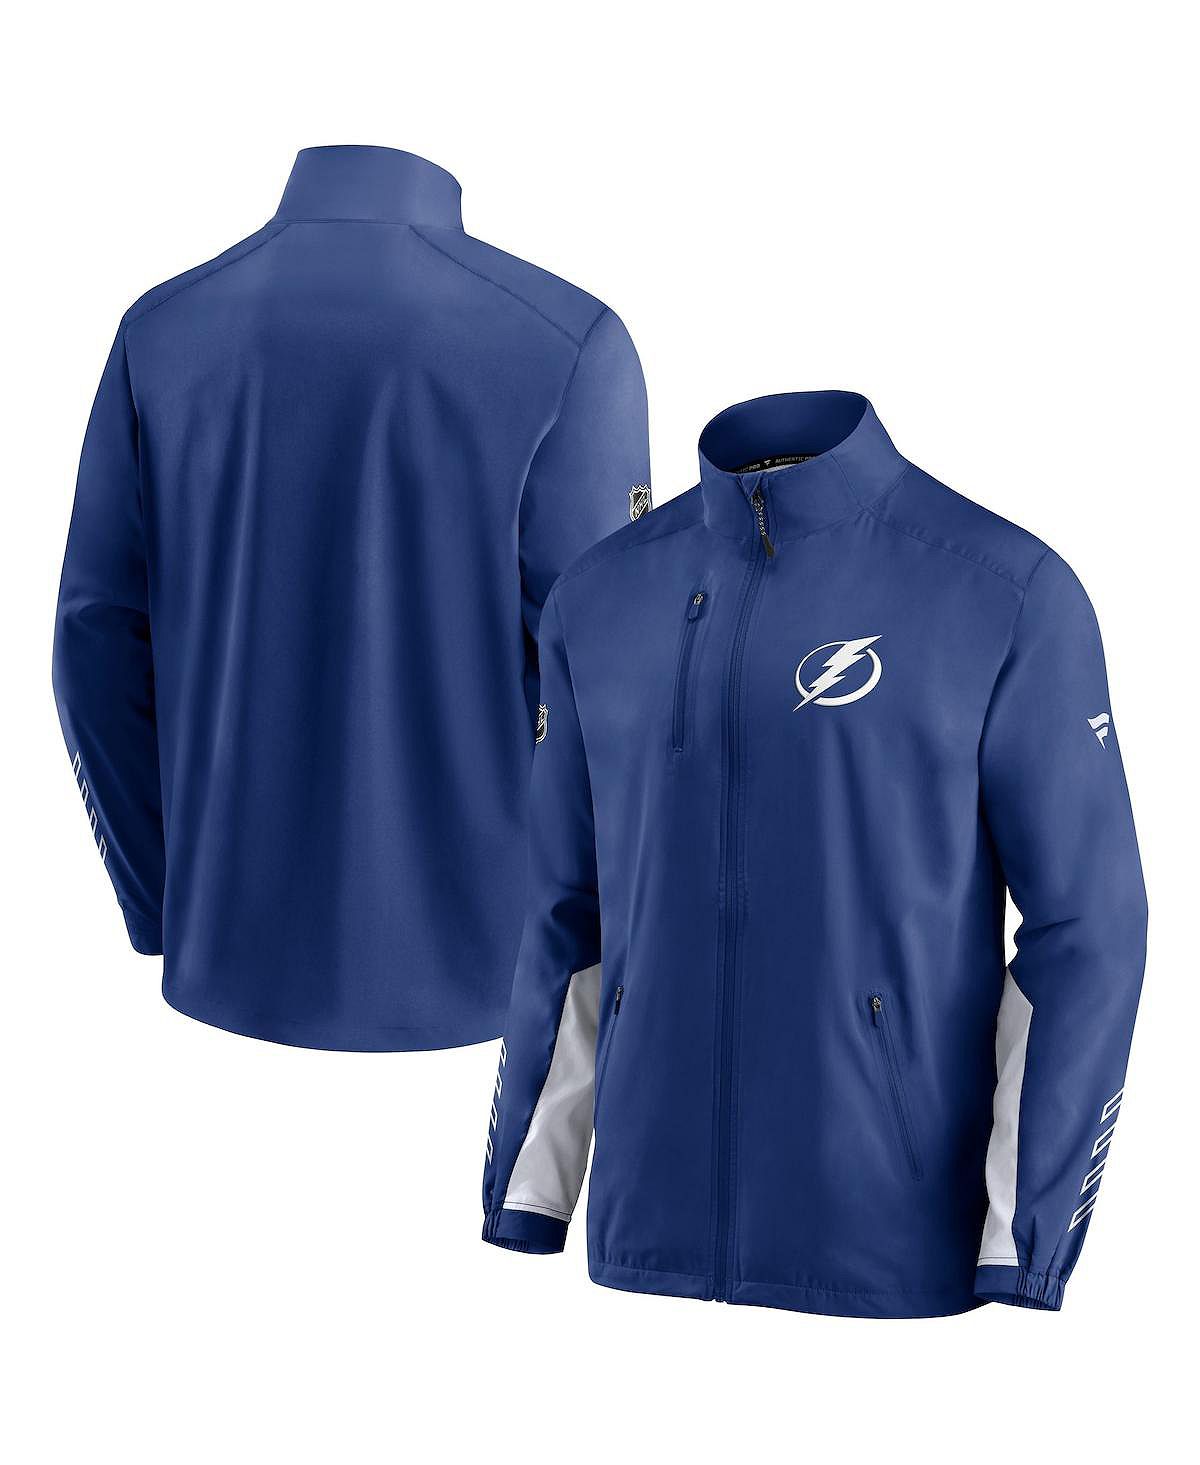 Мужская фирменная синяя куртка tampa bay lightning authentic pro locker room rinkside с полной молнией Fanatics, синий бейсболка tampa bay lightning